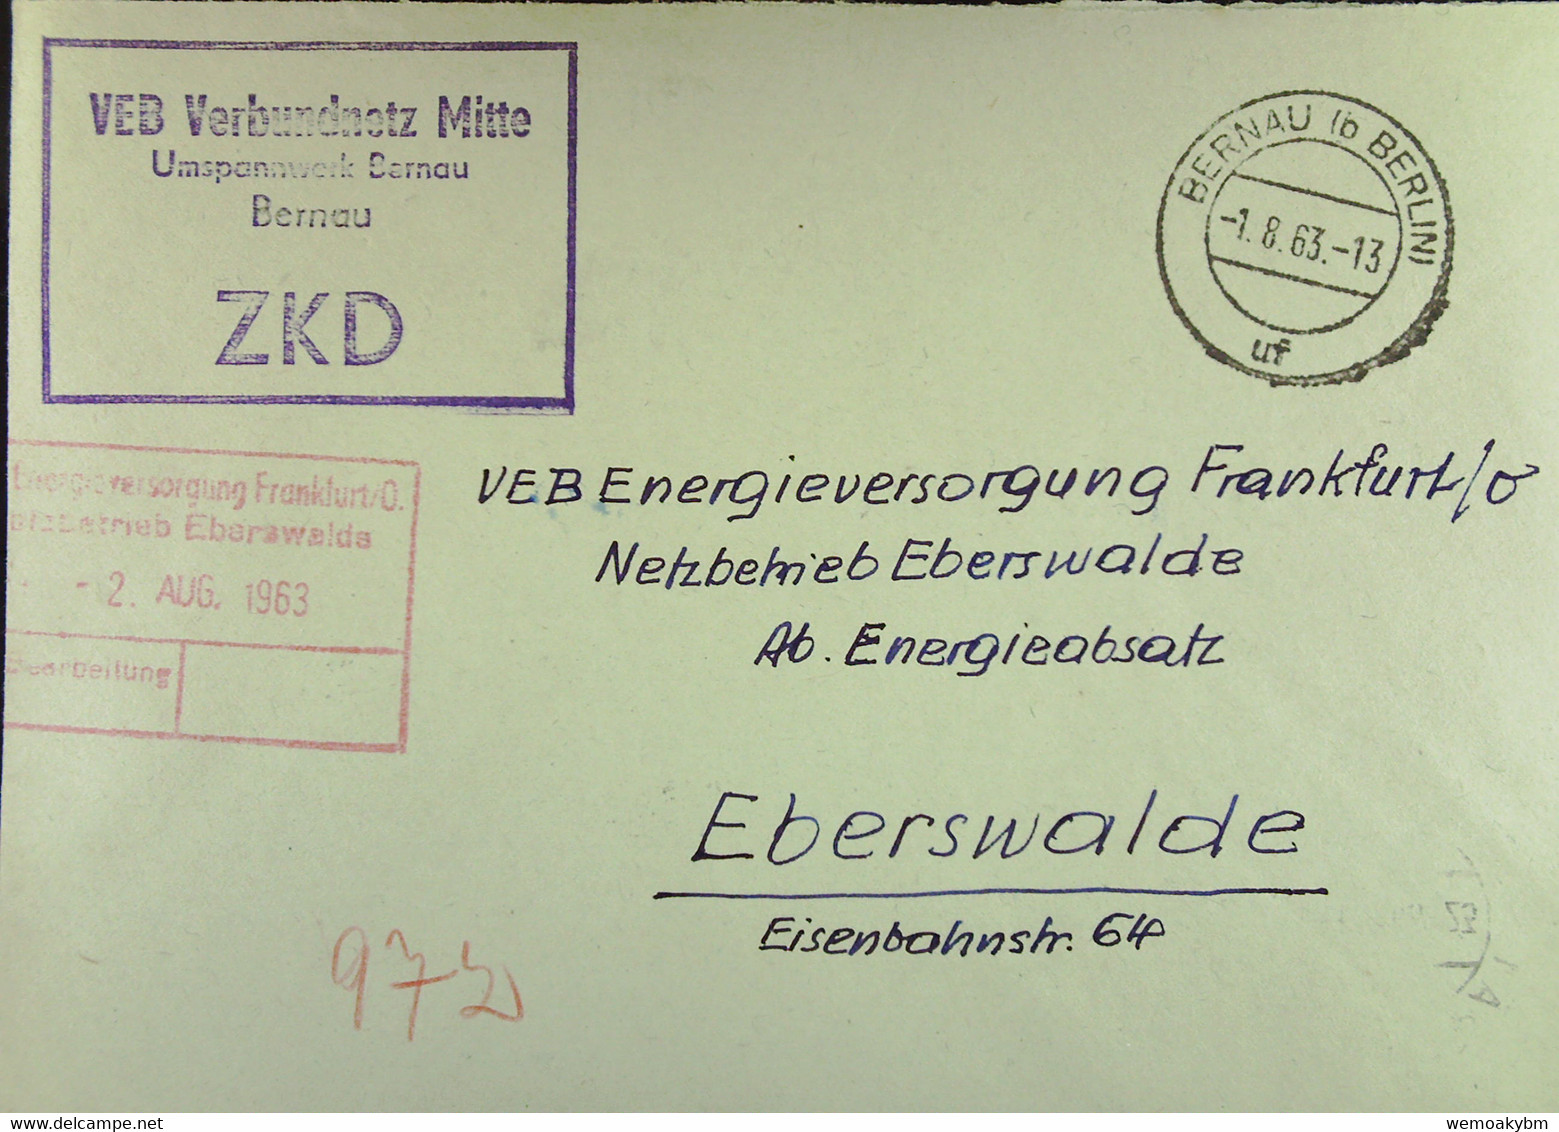 Fern-Brief Mit ZKD-Kastenst "VEB Verbundnetz Mitte Umspannwerk Bernau" 1.8.63 An VEB EV Eberswalde Mit Rotem Eing-St - Lettres & Documents